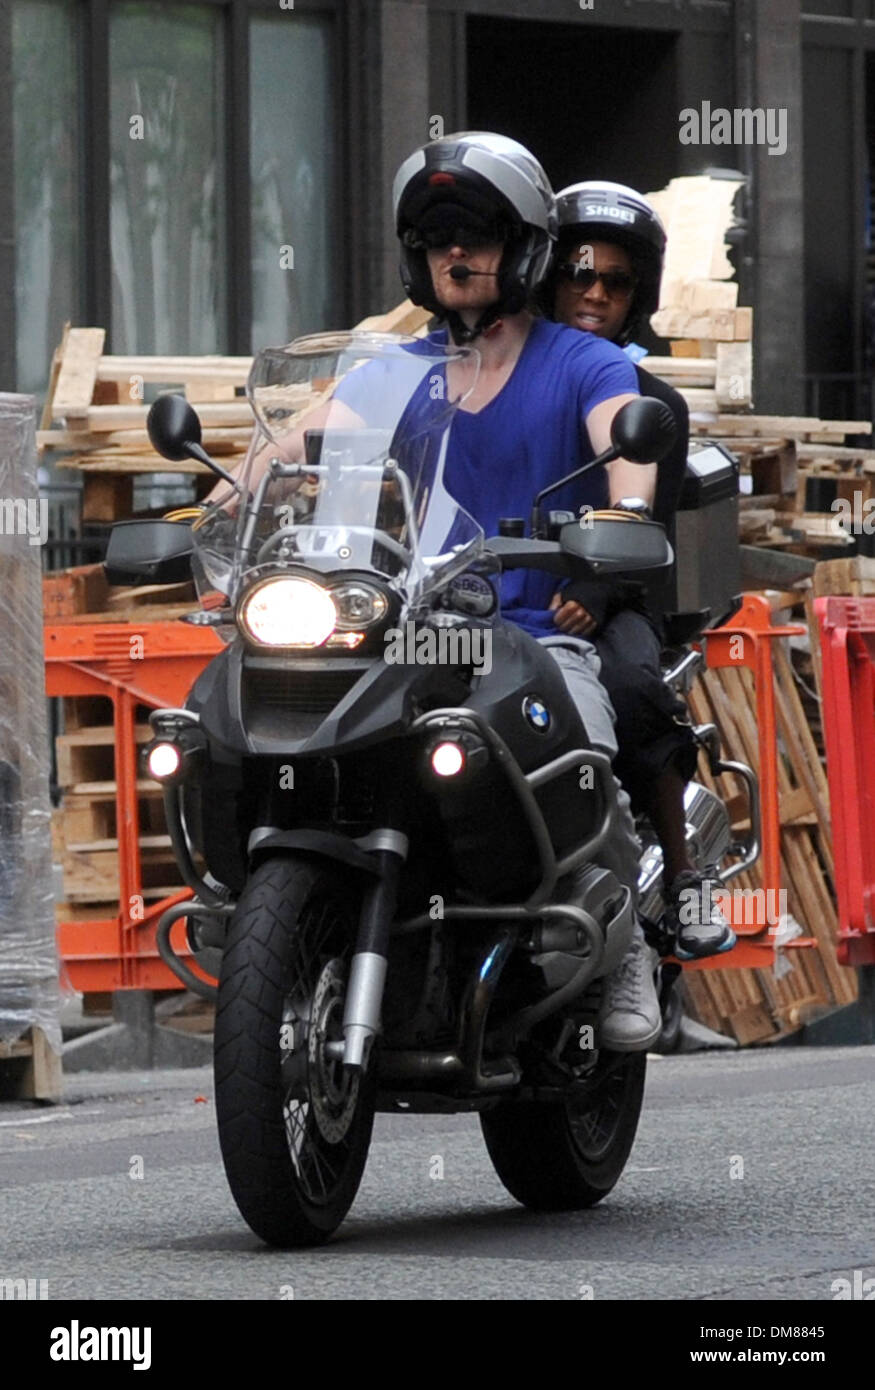 Michael Fassbender nimmt Freundin Nicole Beharie für eine Fahrt auf seinem  Motorrad London England - 29.08.12 Stockfotografie - Alamy